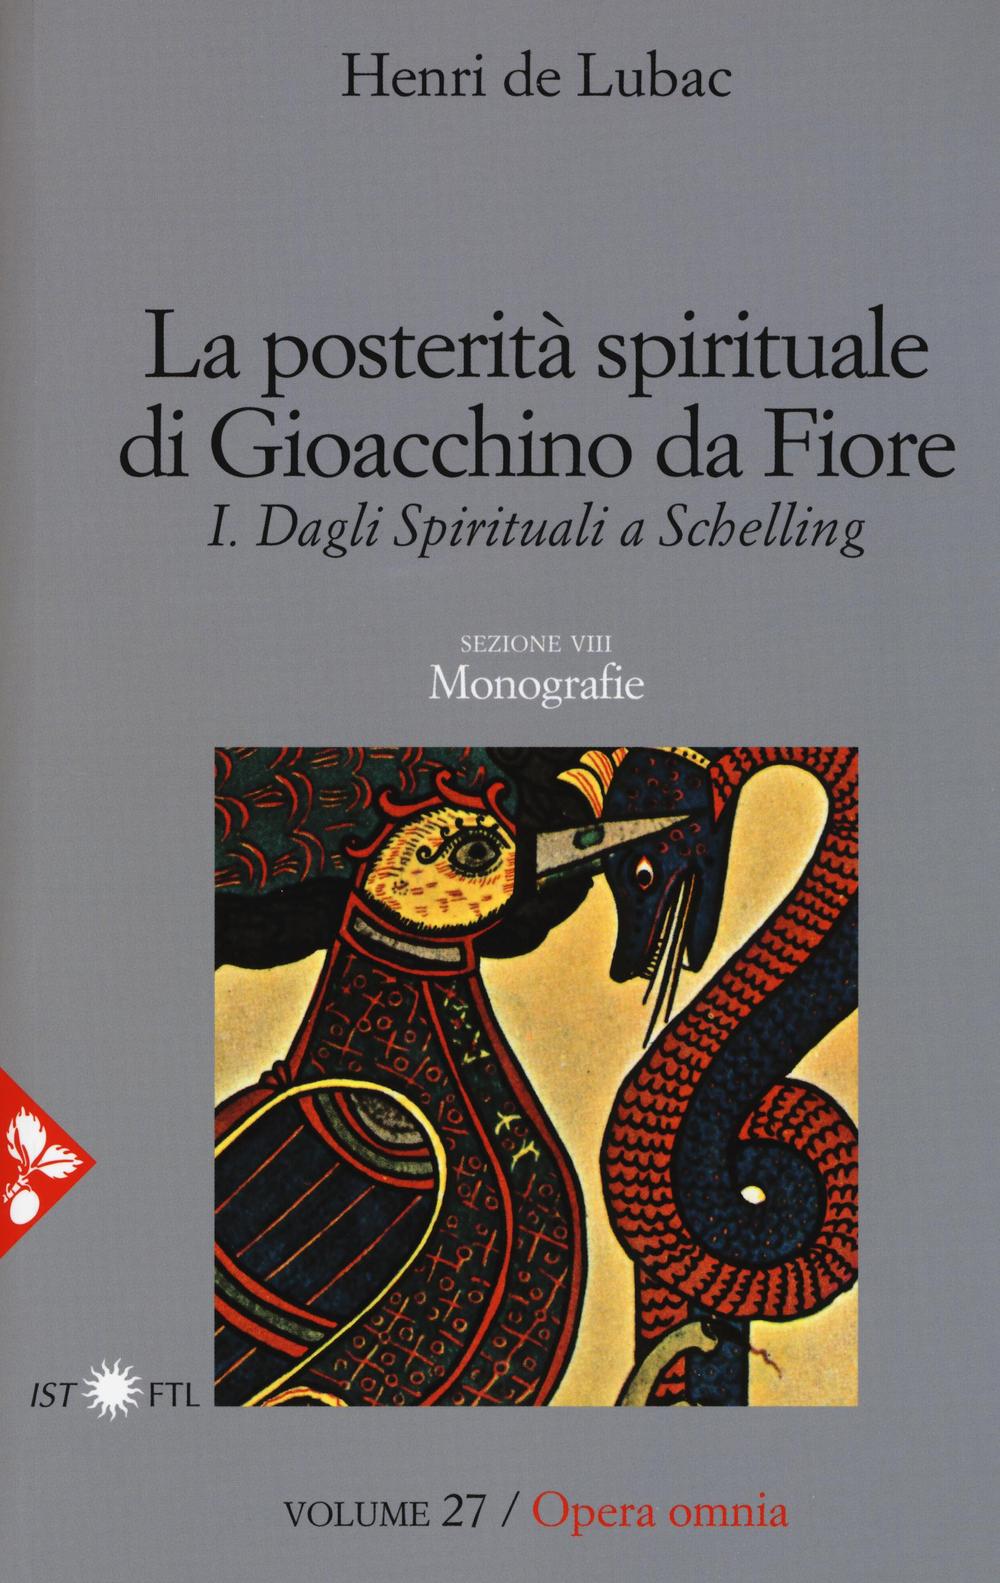 Opera omnia. Vol. 27: La posterità spirituale di Gioacchino da Fiore. Dagli spirituali a Schelling. Monografie